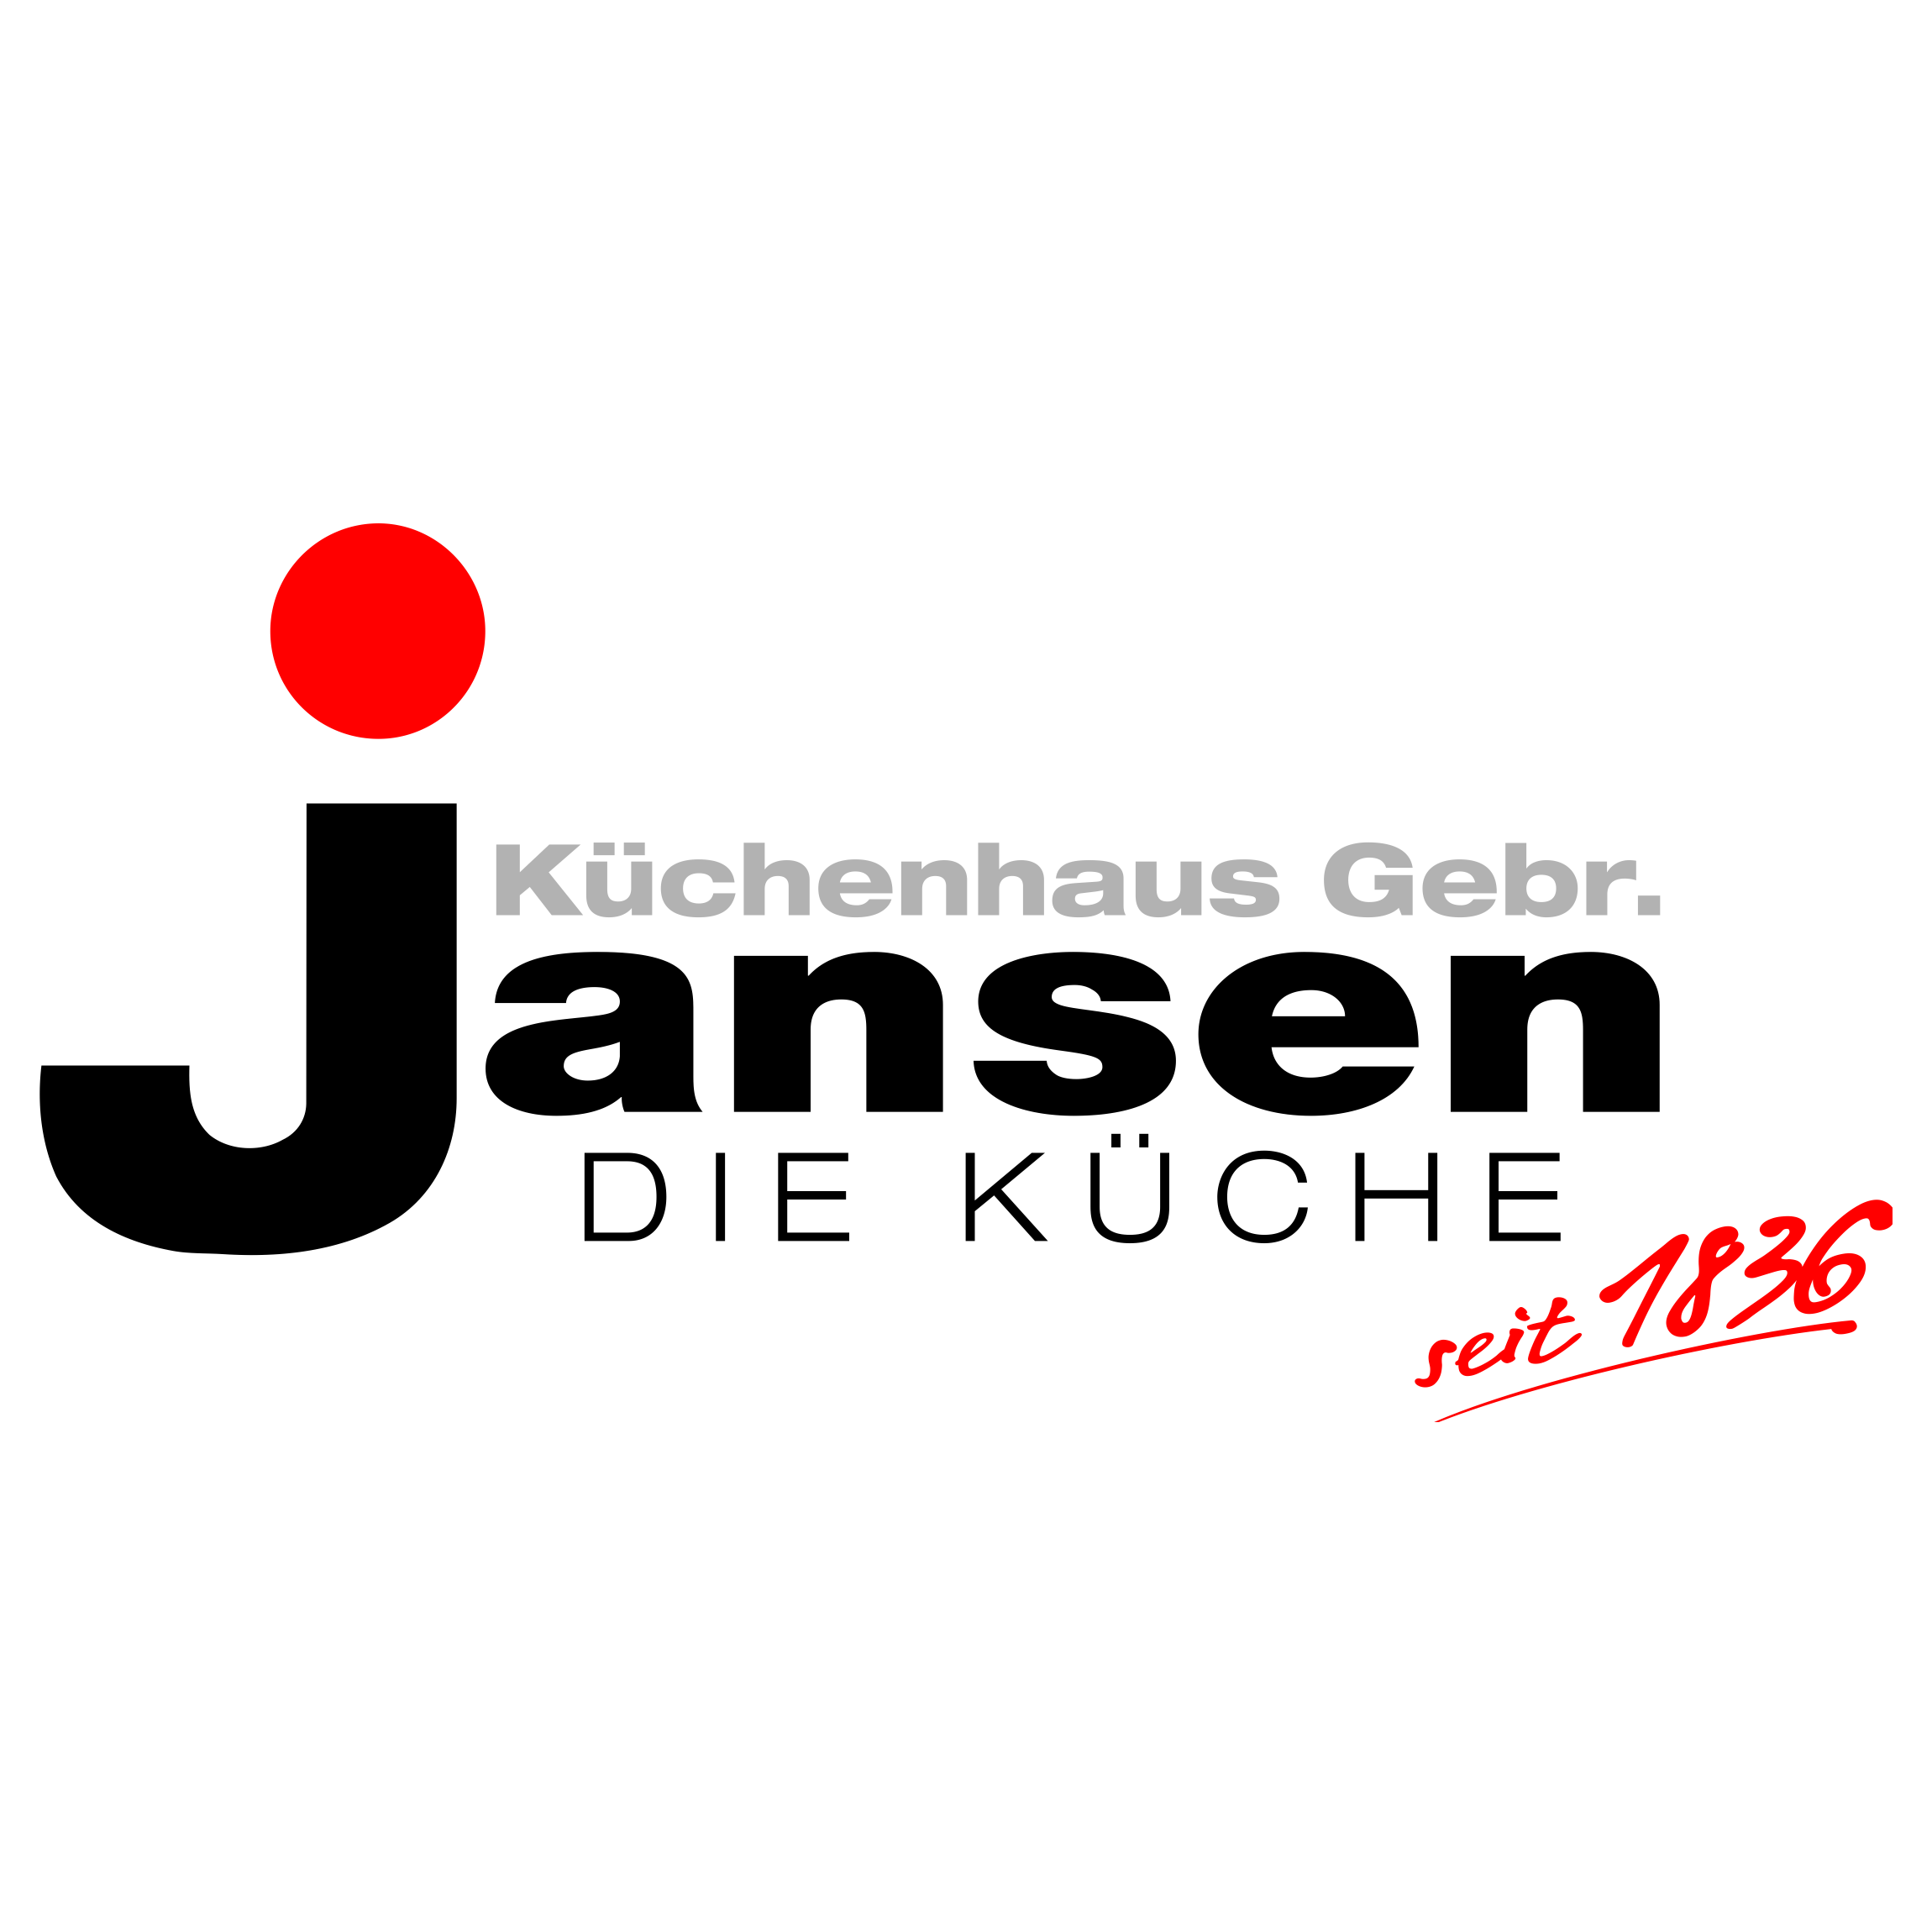 Küchenhaus Gebr. Jansen Logo